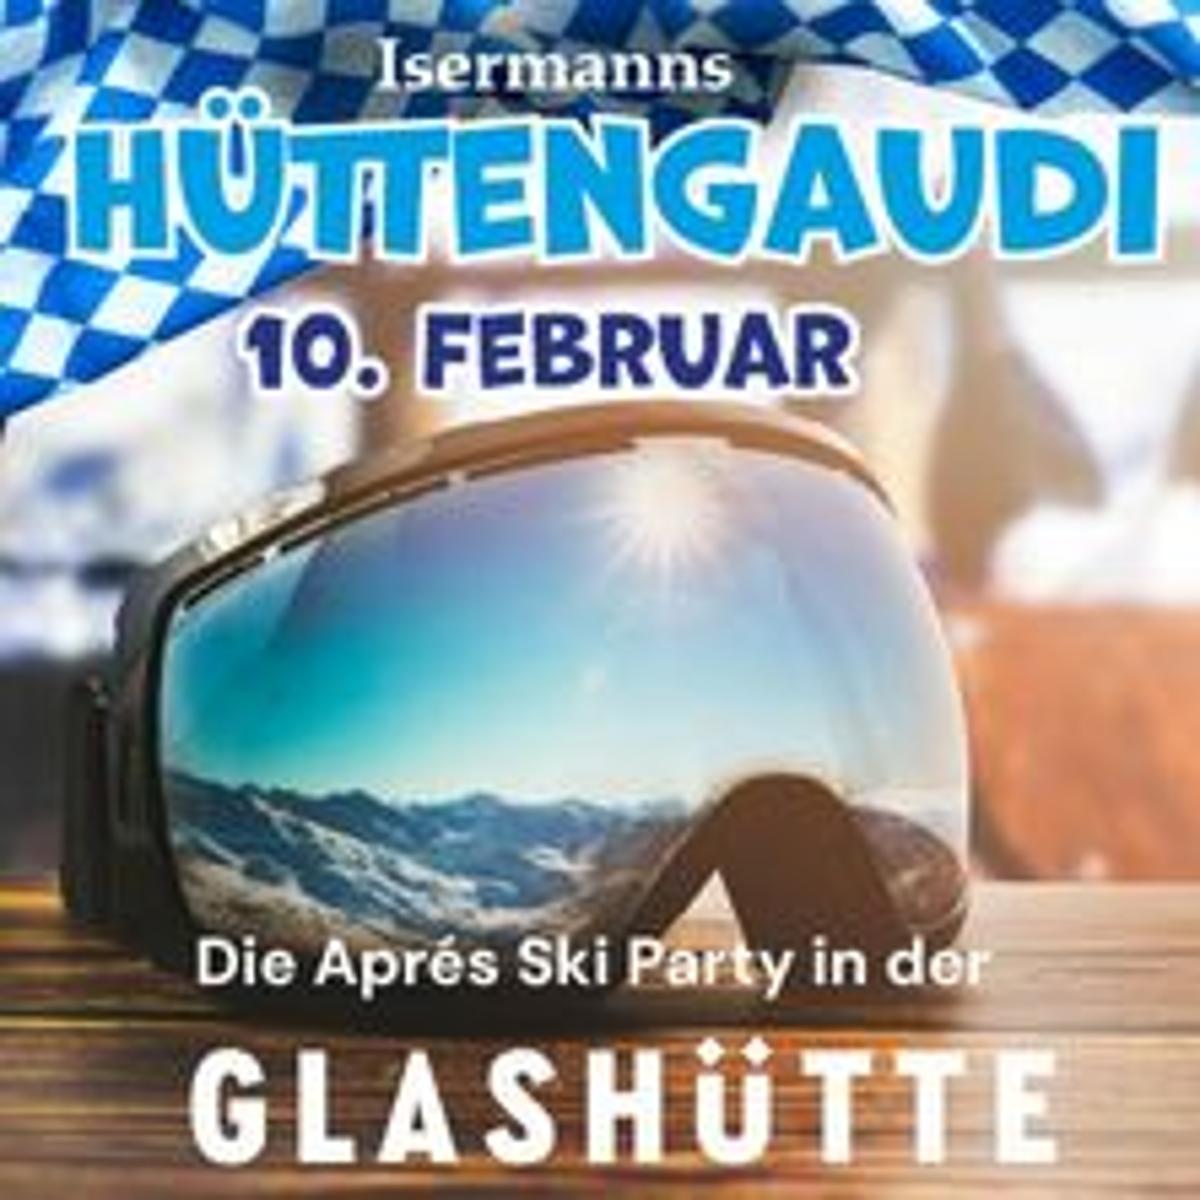 Eine Veranstaltung der Reihe Isermanns Hüttengaudi - Die Apres Ski Party in der GlashütteIsermanns Hüttengaudi verspricht eine unvergessliche Apres Ski Party in der malerischen Glashütte. Der Einlass beginnt um 21:00 Uhr und ist ab 16 Jahren gestattet (mit...